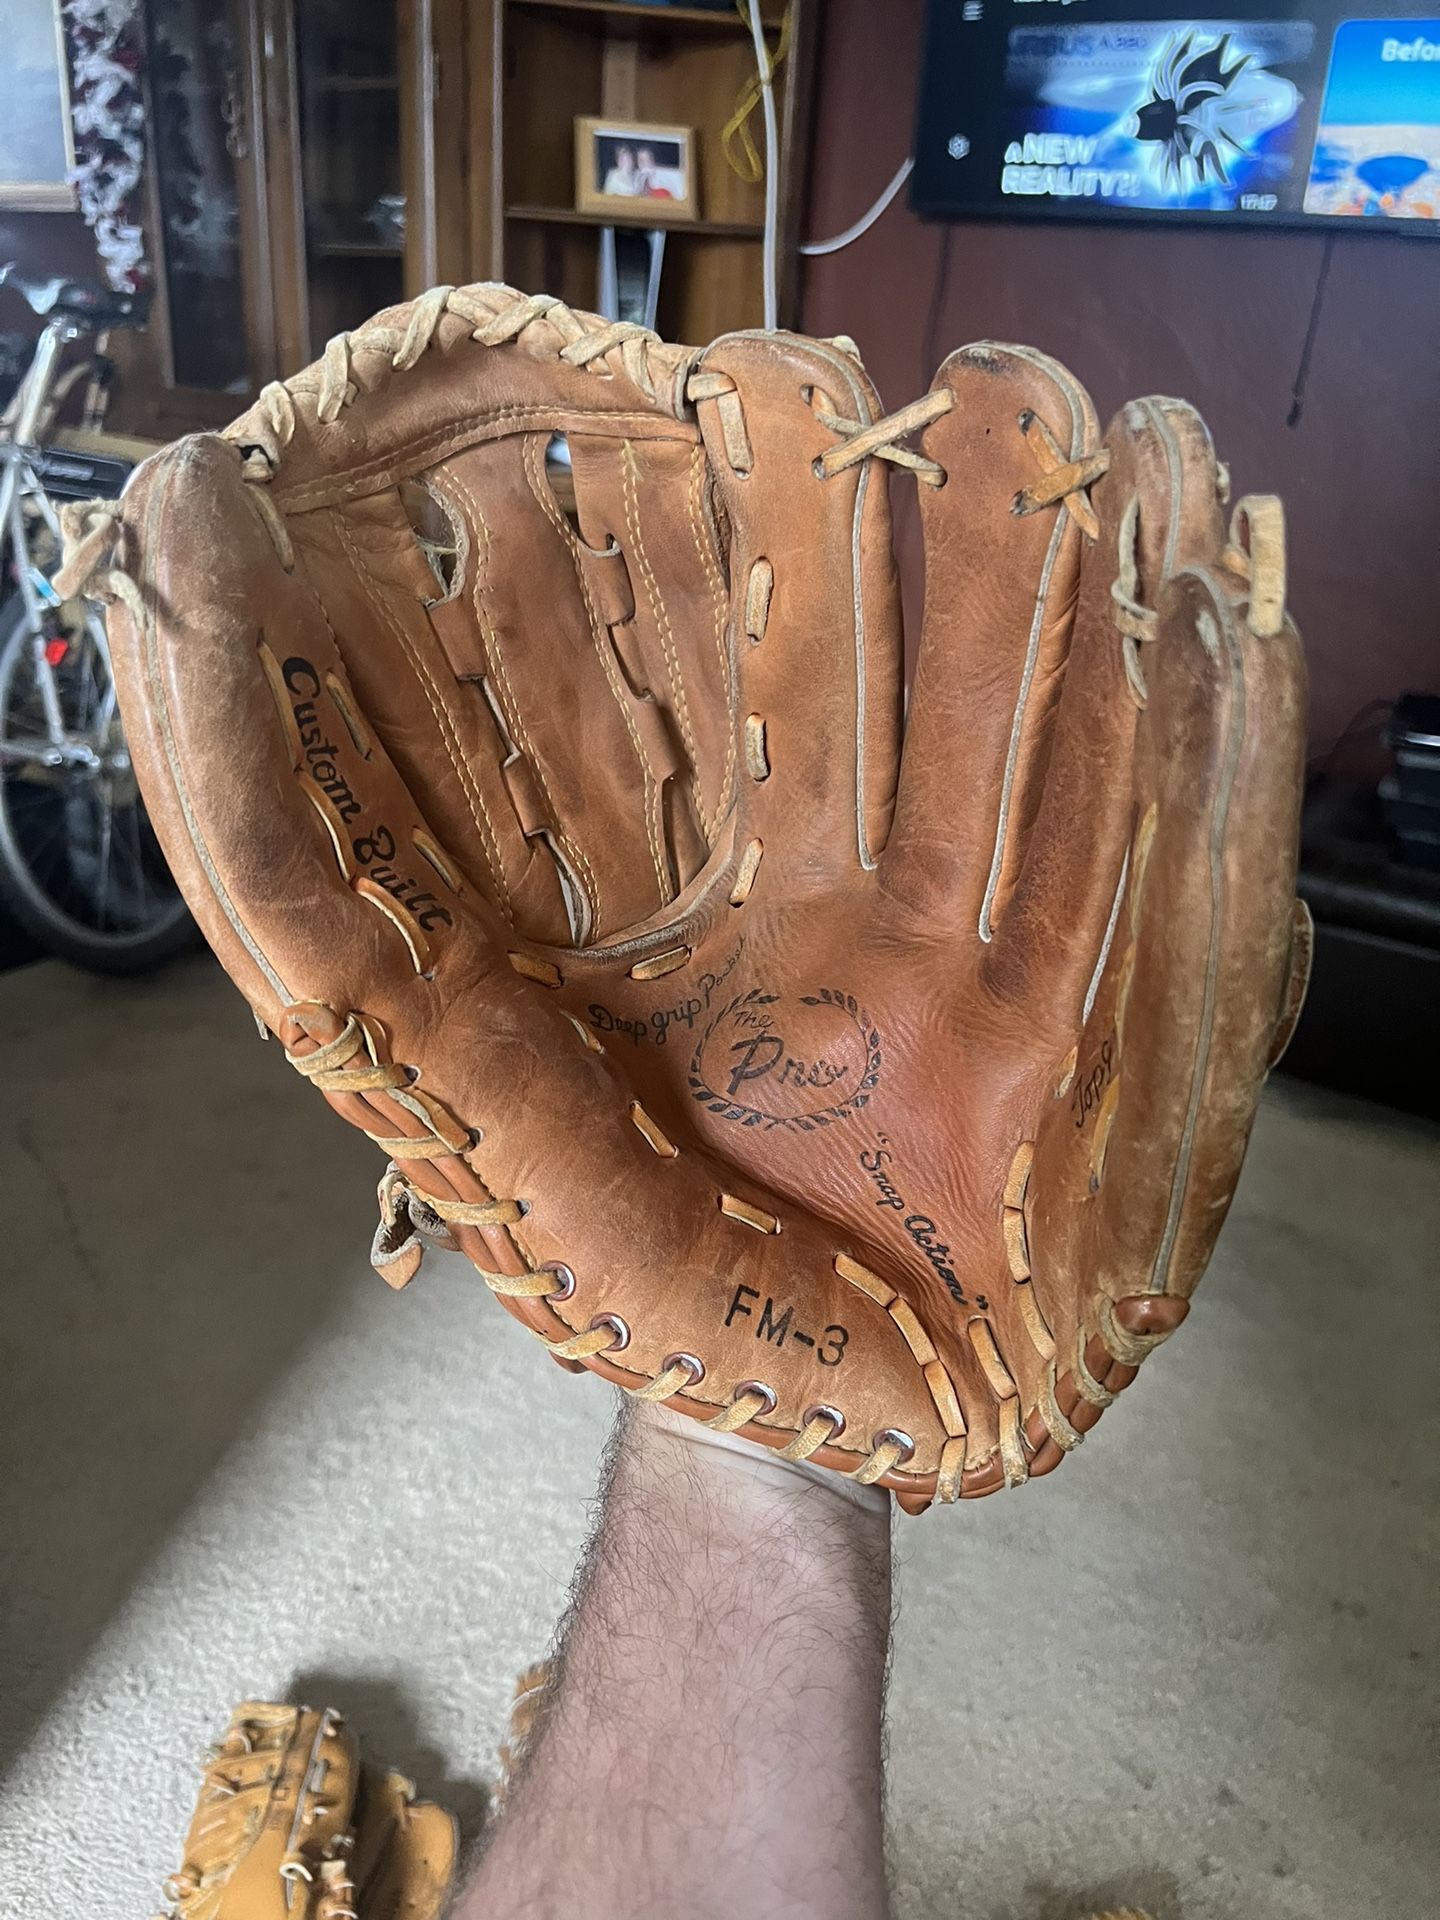 Fedmart Softball / Baseball Adult Glove Righty Regents Wilson Lefty Gloves Thrower Righ-handed RHT 